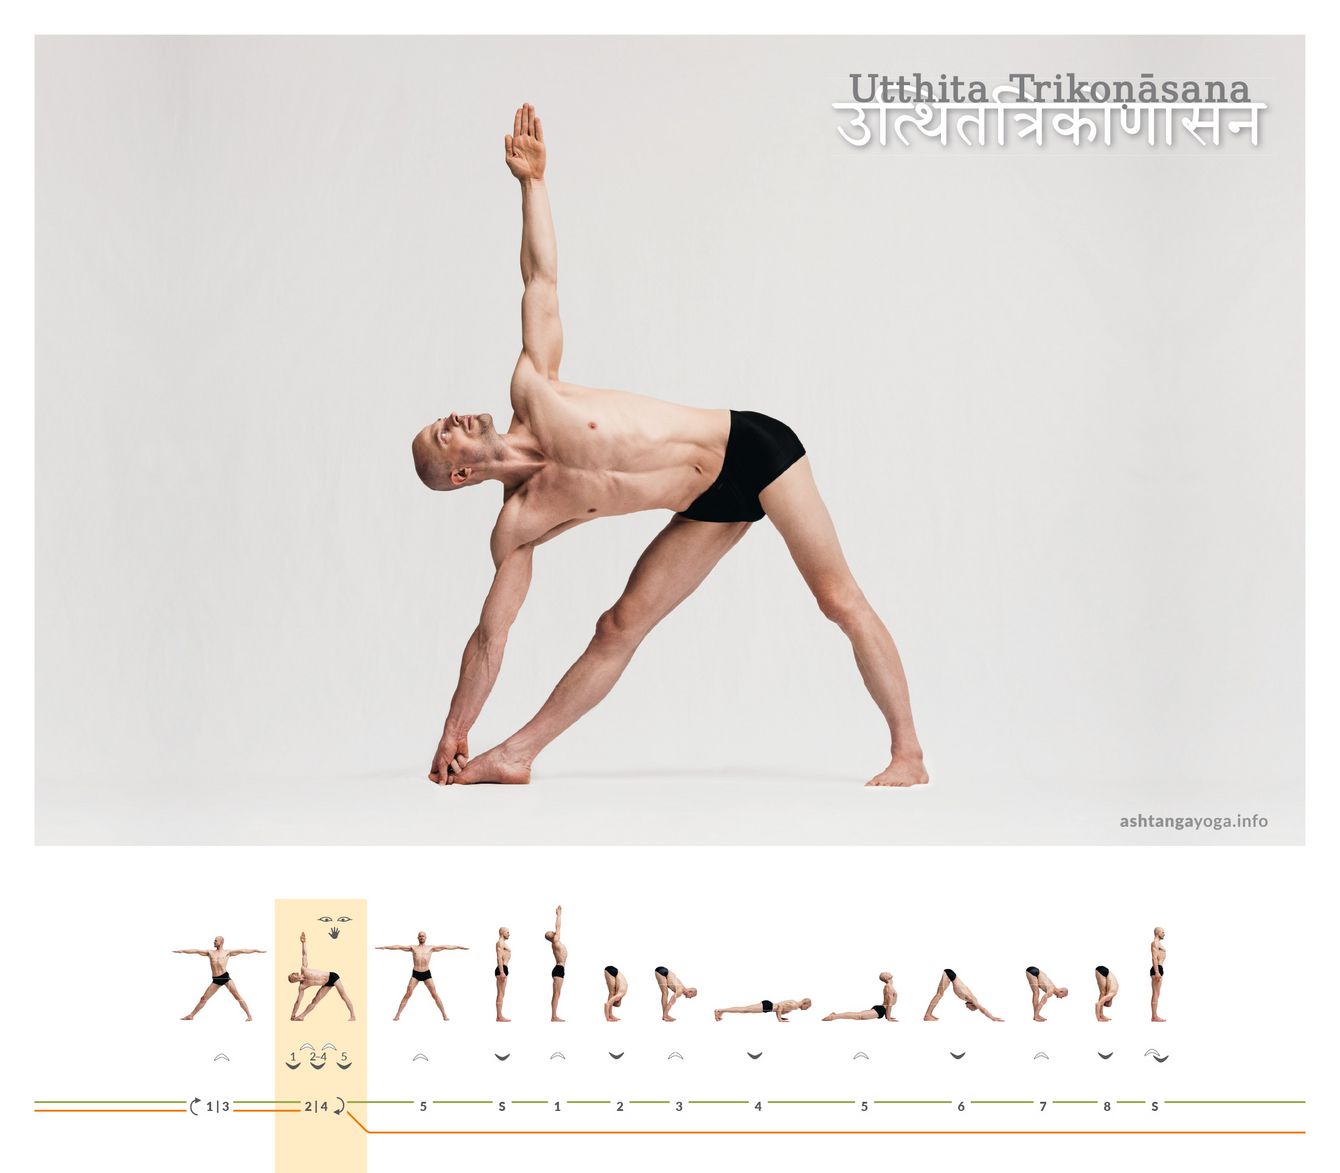 Die “Haltung des Dreiecks” ist eine stehende Haltung, bei der die Beine mit dem Boden ein Dreieck bilden. Zwischen dem horizontalen Oberkörper und den senkrechten Armen entstehen weitere Dreiecke - Utthita Trikonasana.